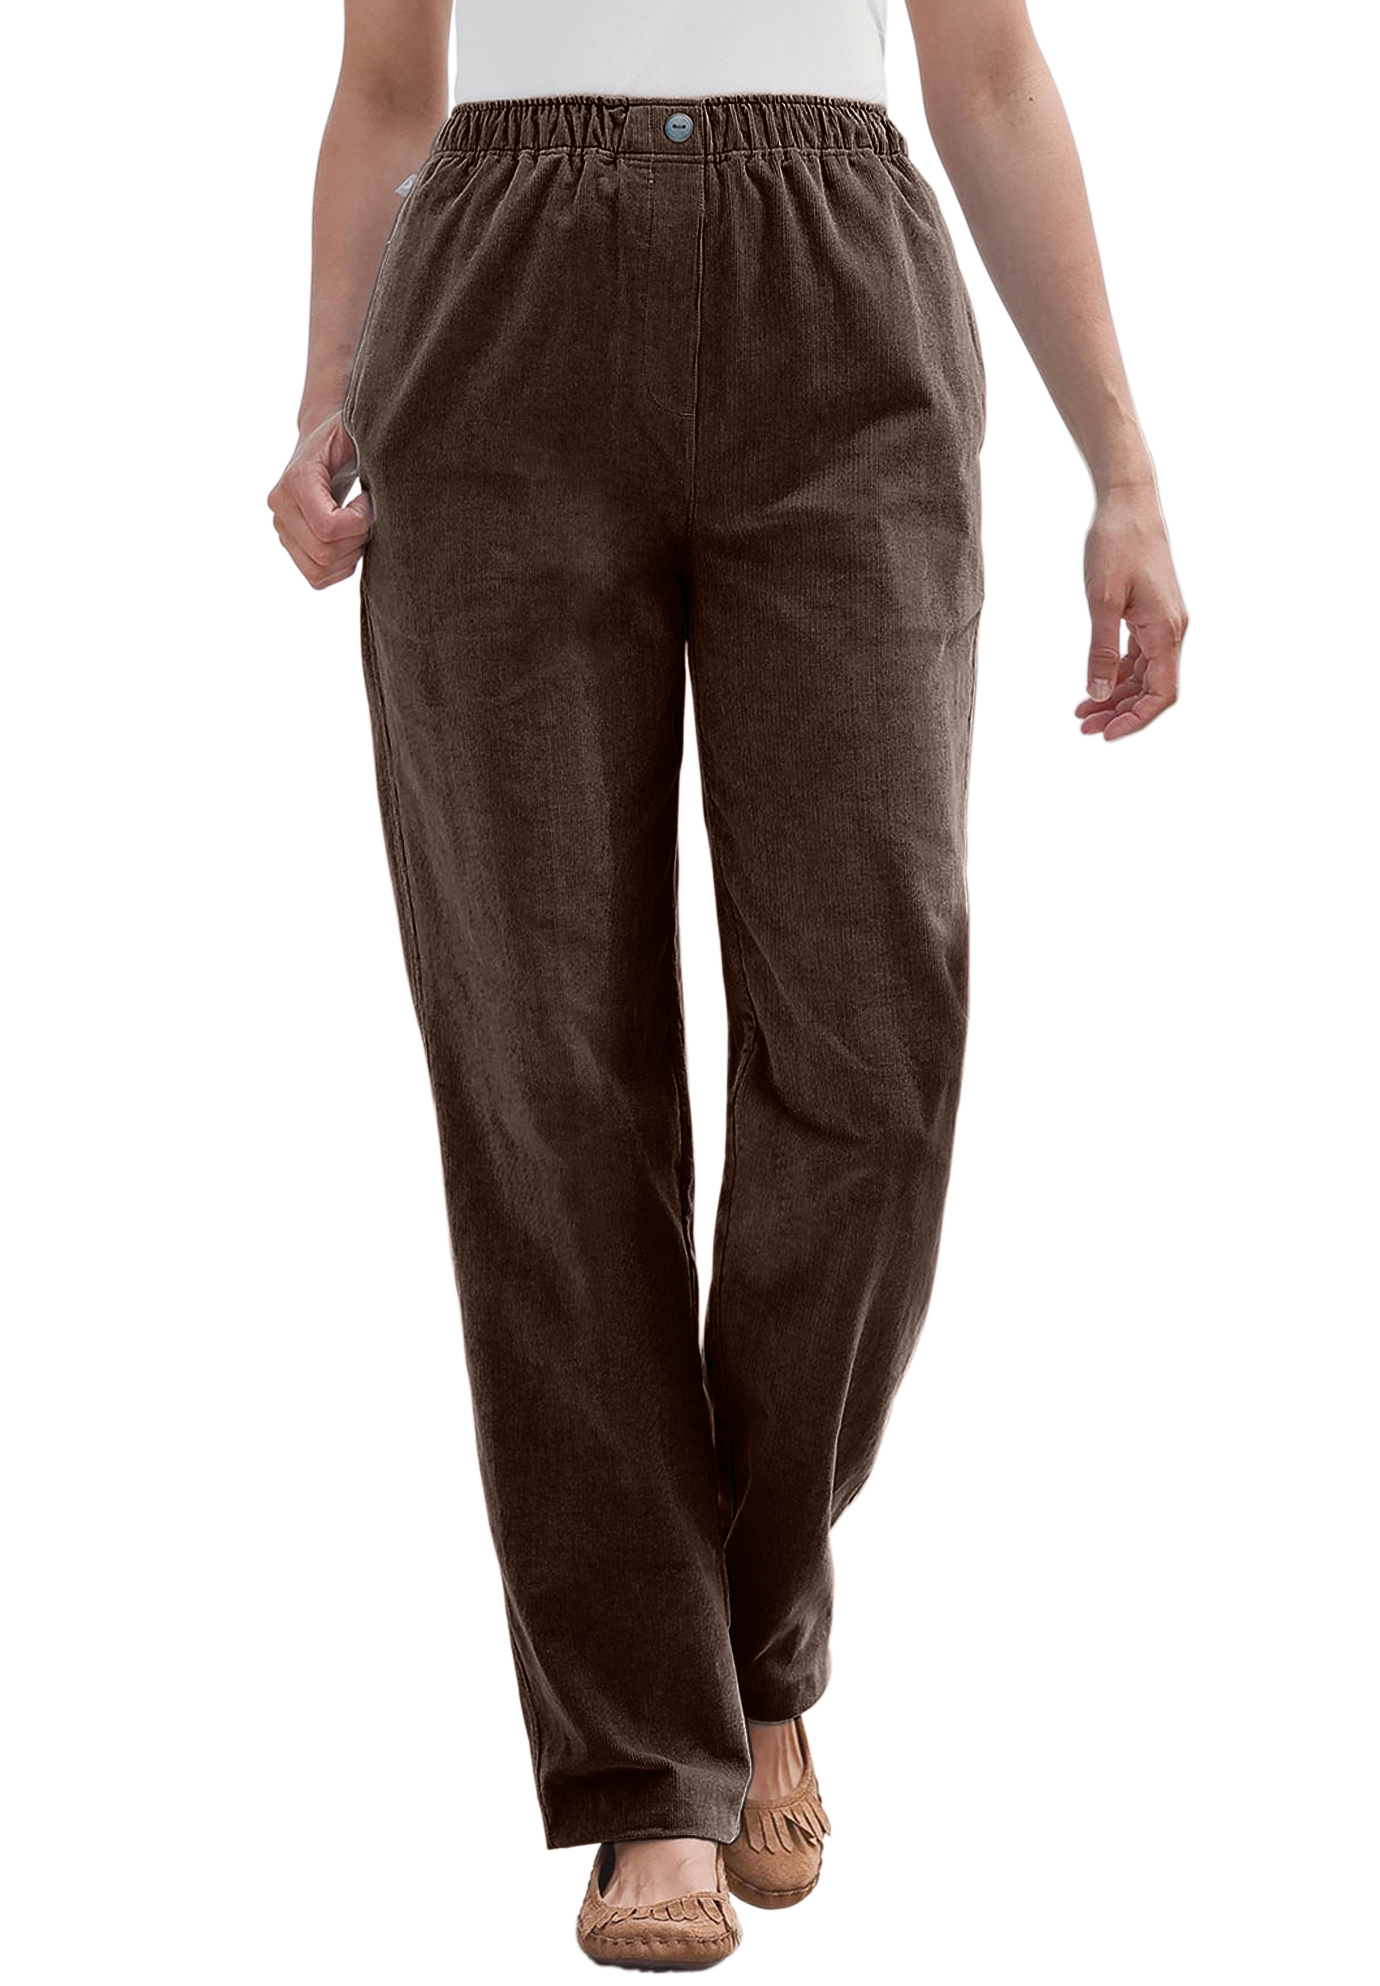 corduroy pants with elastic waistband